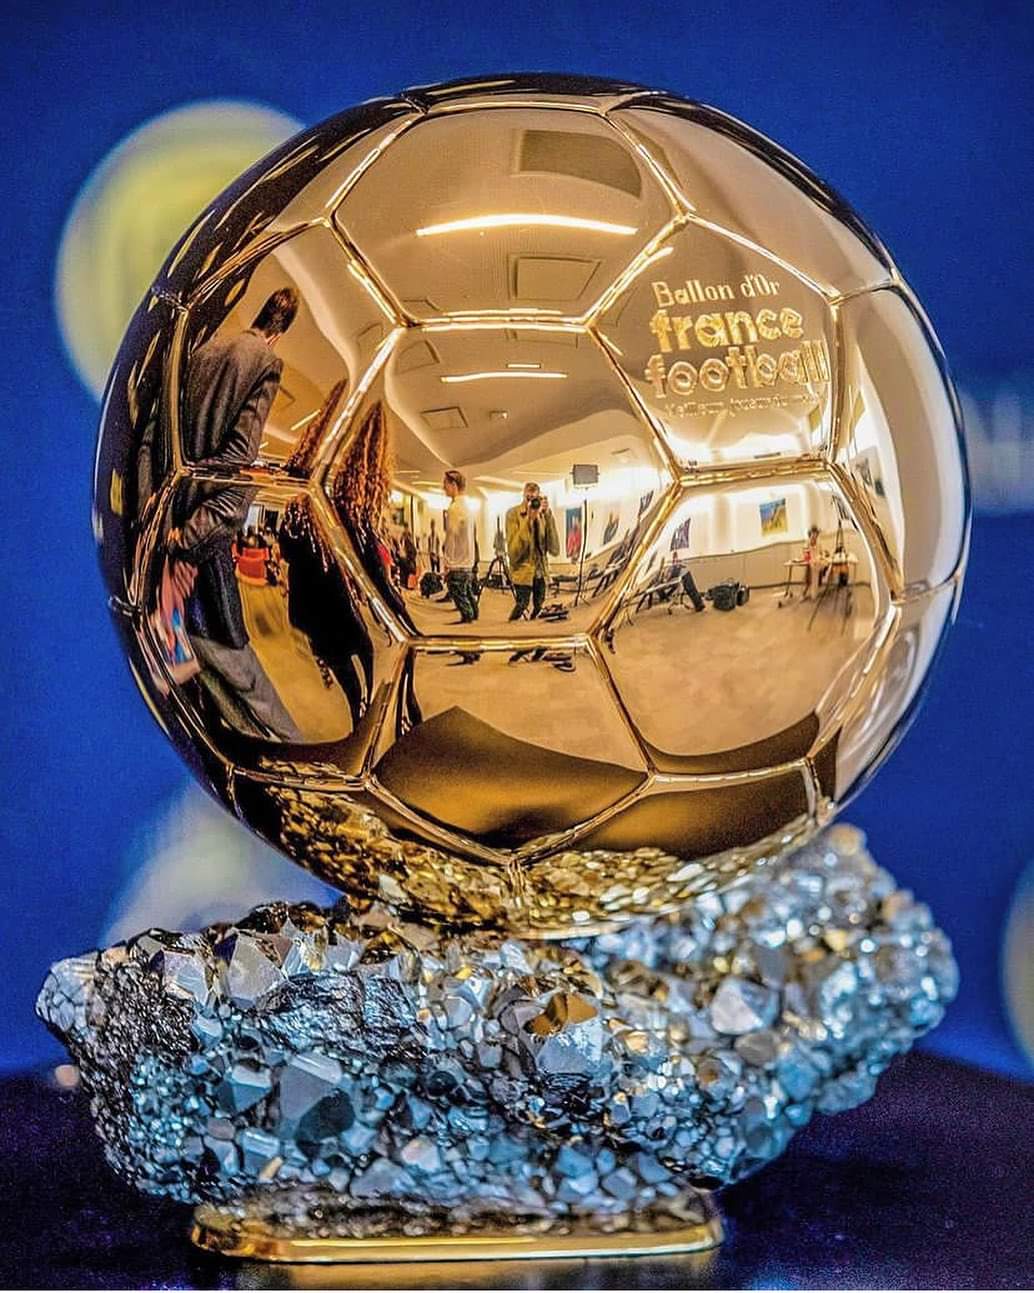 Classement du Ballon d'Or 2023 : Messi, Haaland et Mbappé qui se disputent le statut de favori